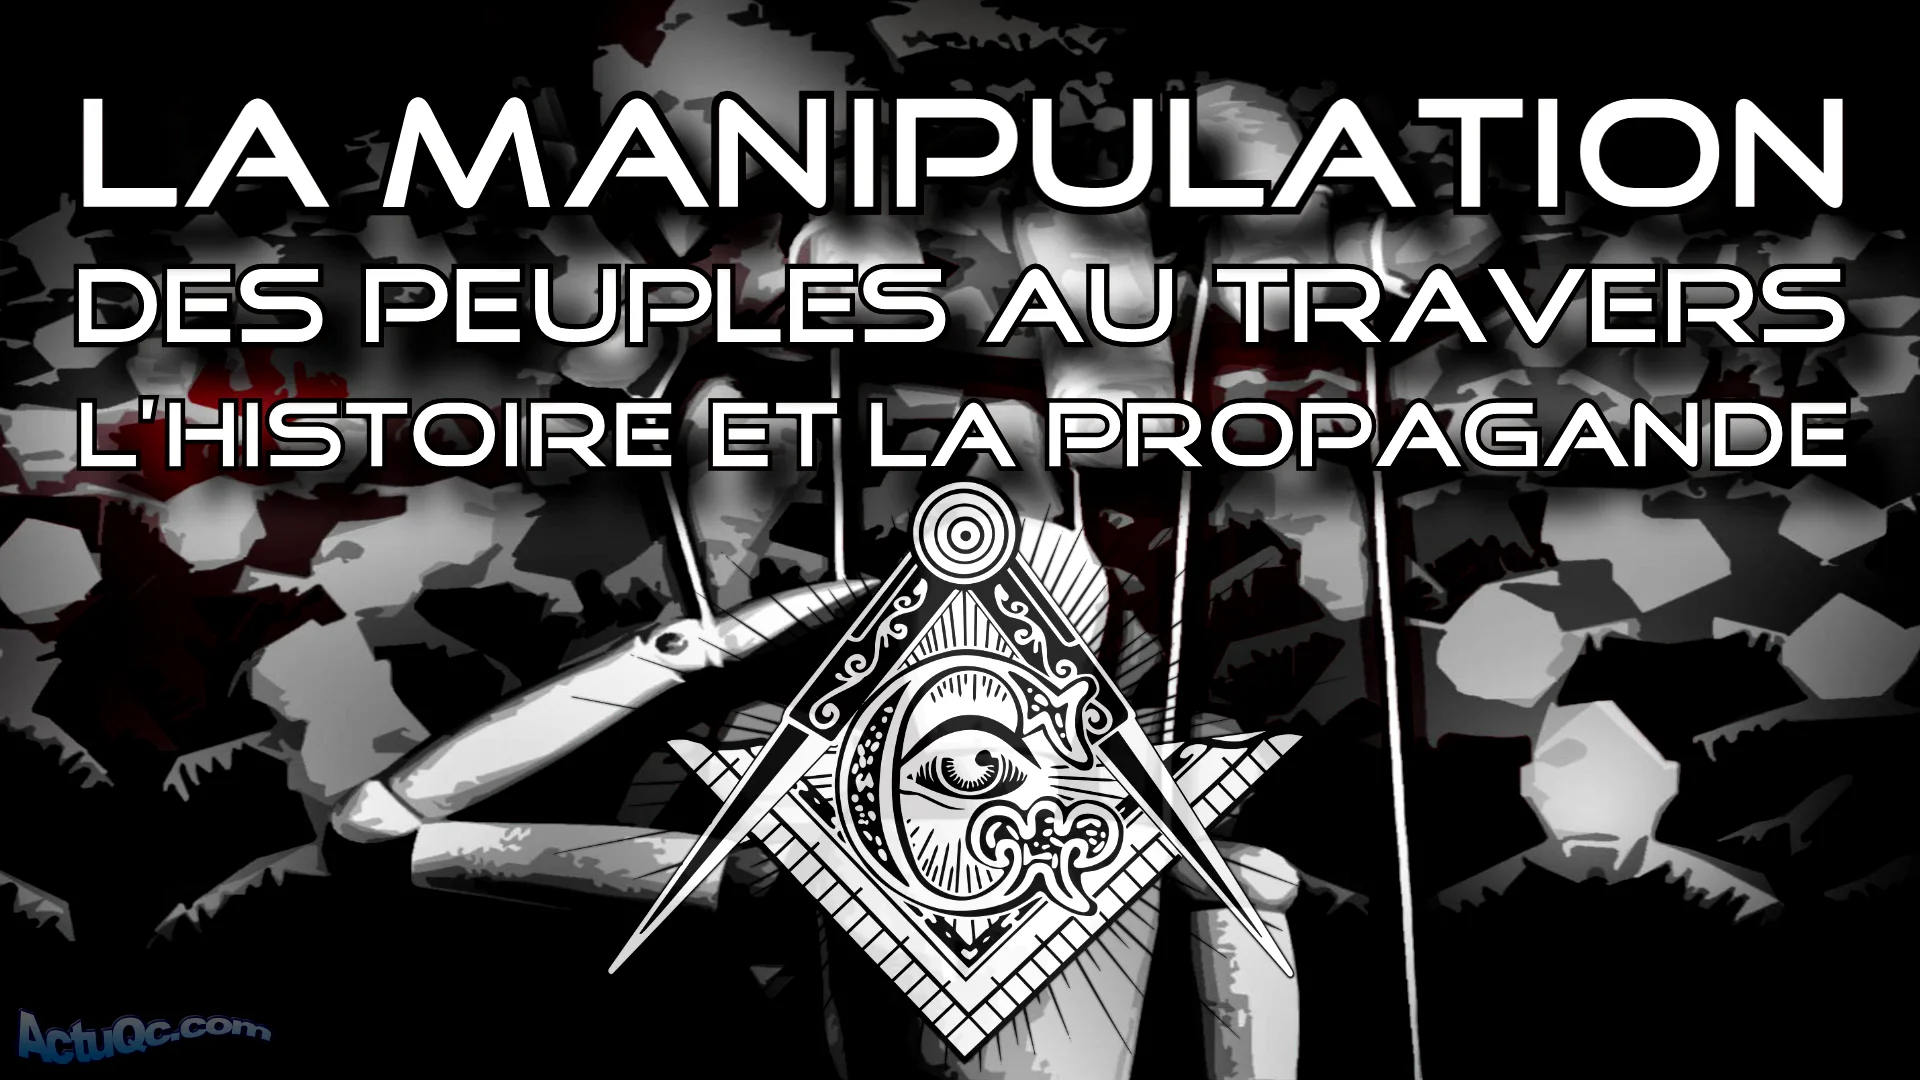 La manipulation des peuples au travers l’histoire et la propagande (10:17= Ten:Q= Thank You)